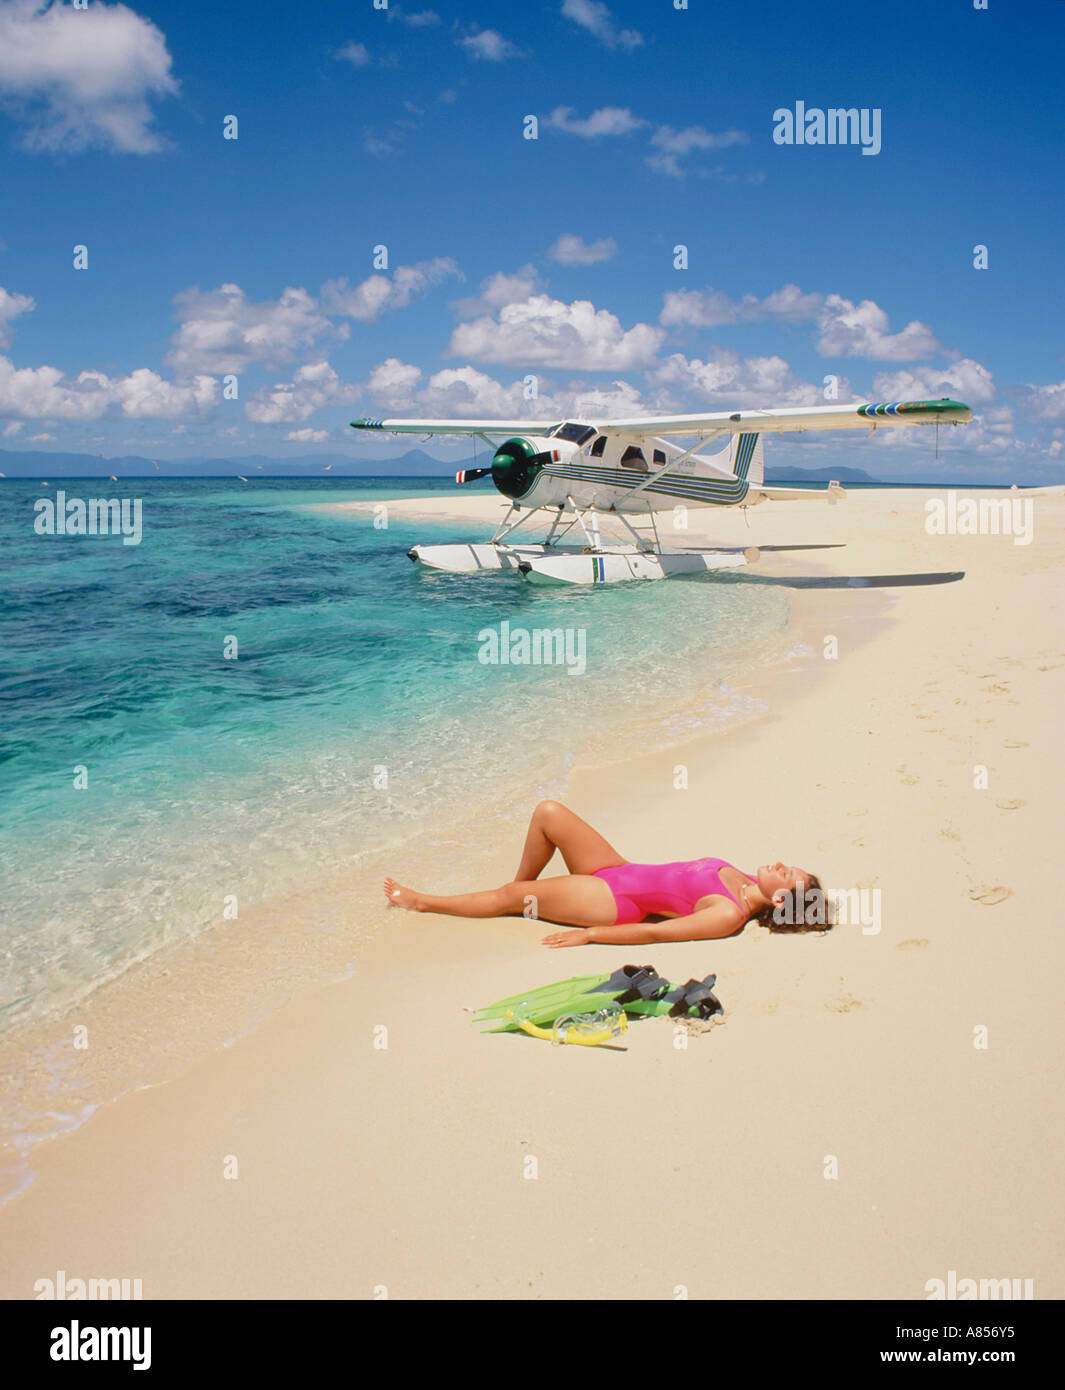 Junge Frau im Badeanzug liegend auf dem Rücken am Strand von Sudbury Cay, Queensland, Australien. Wasserflugzeug im Hintergrund. Stockfoto